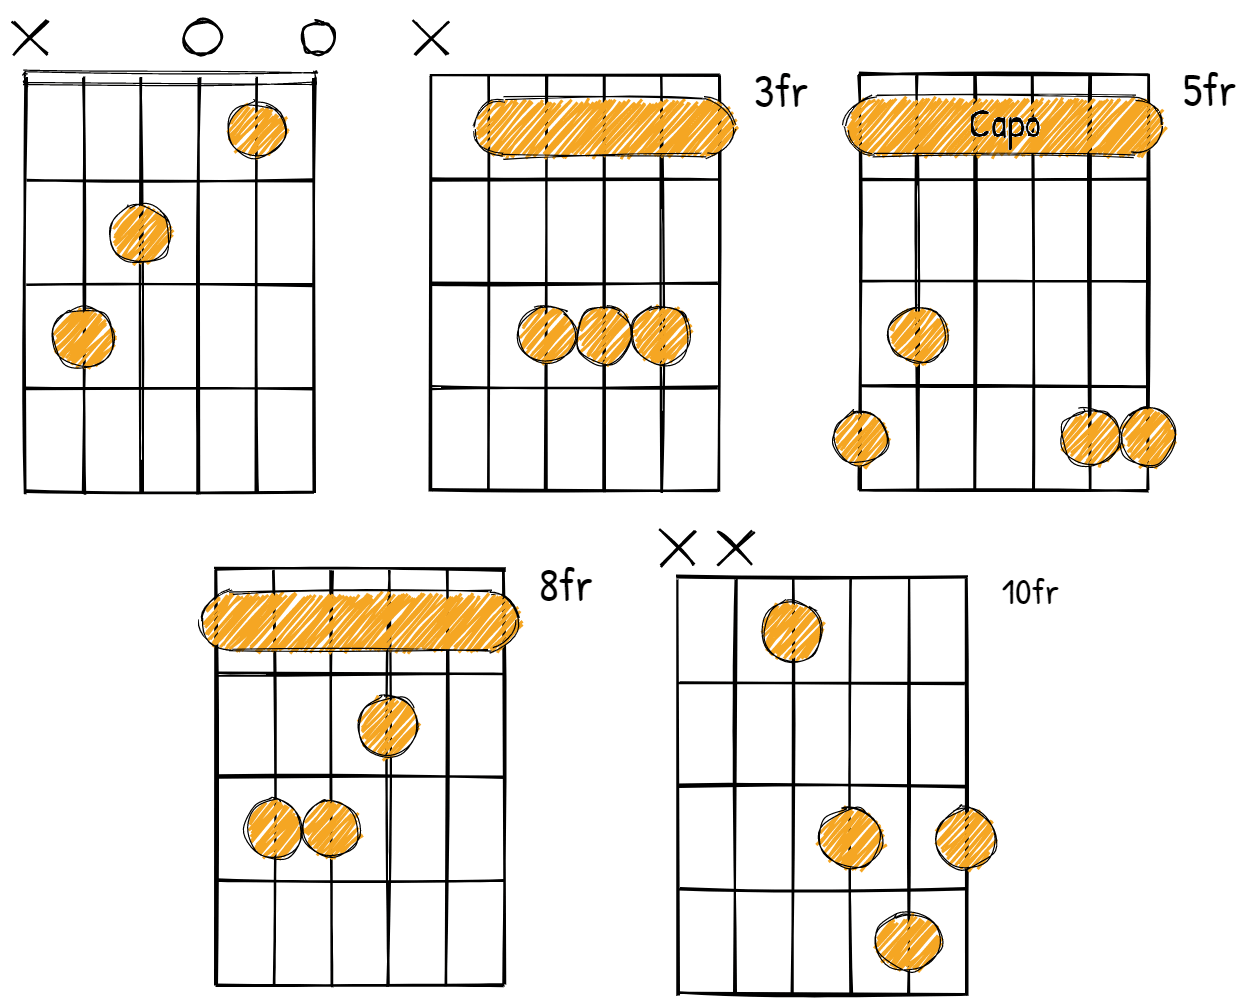 C Major Chord diagrams